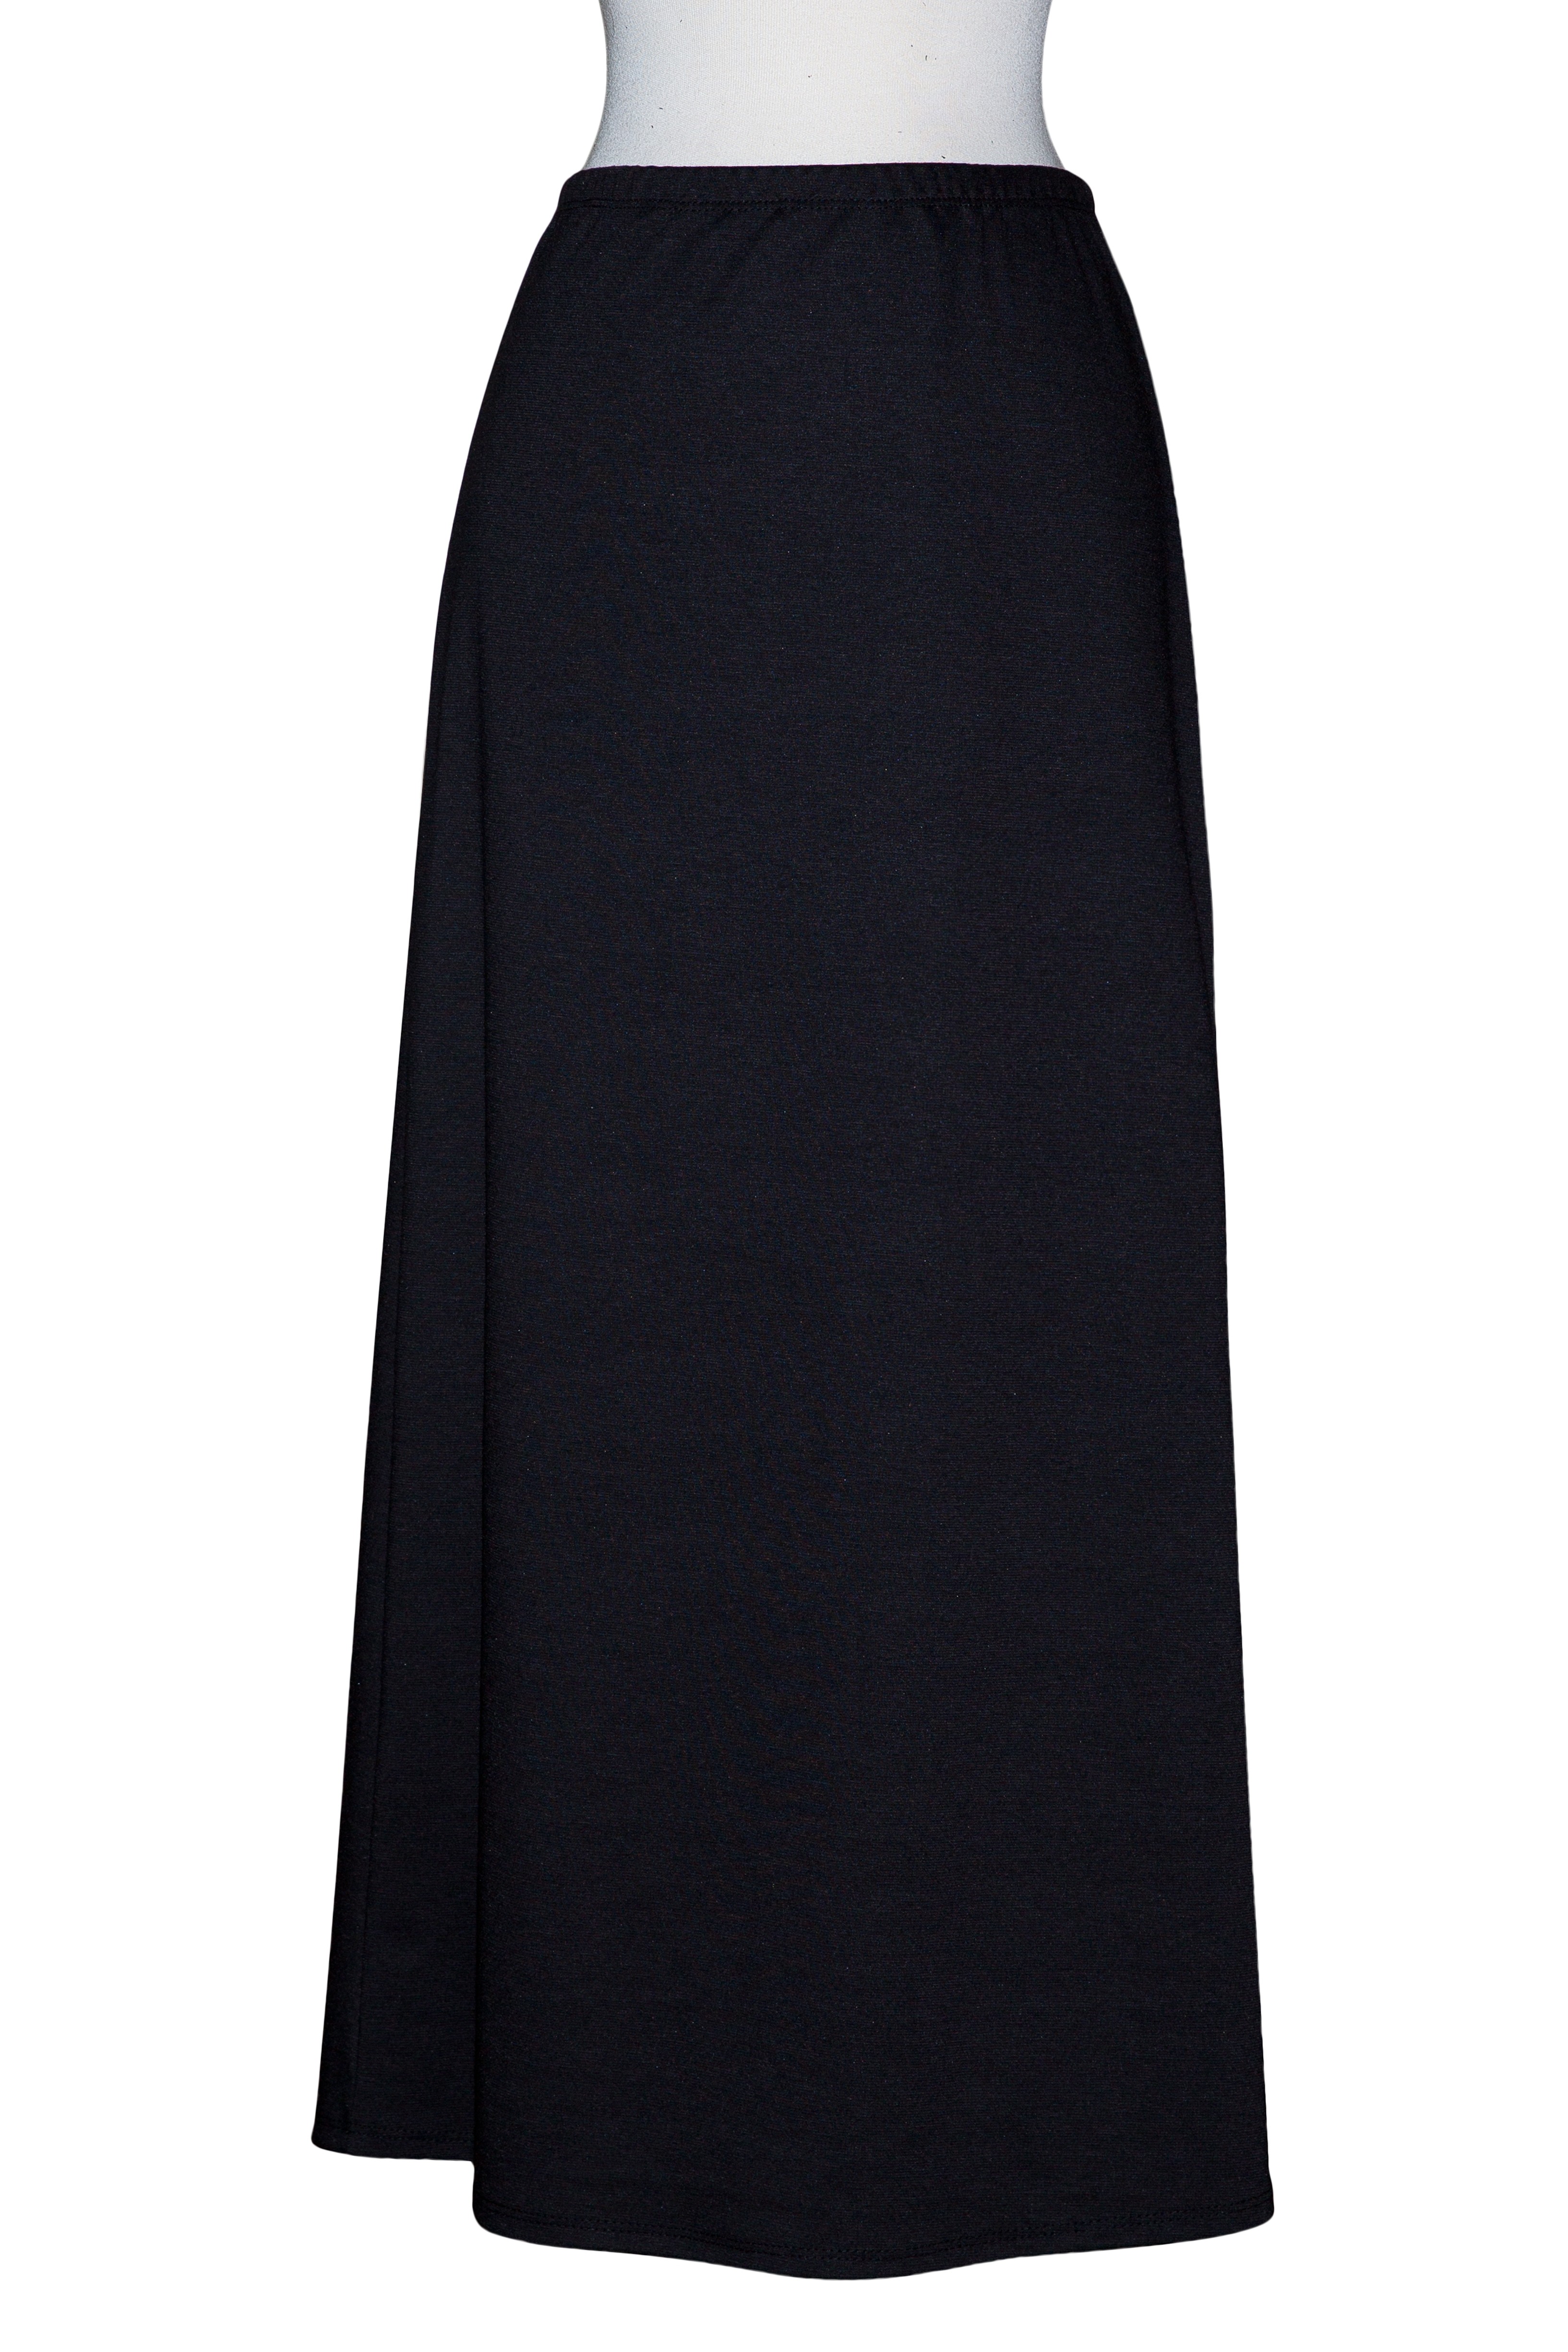 Black Ponte Knit A-Line Skirt